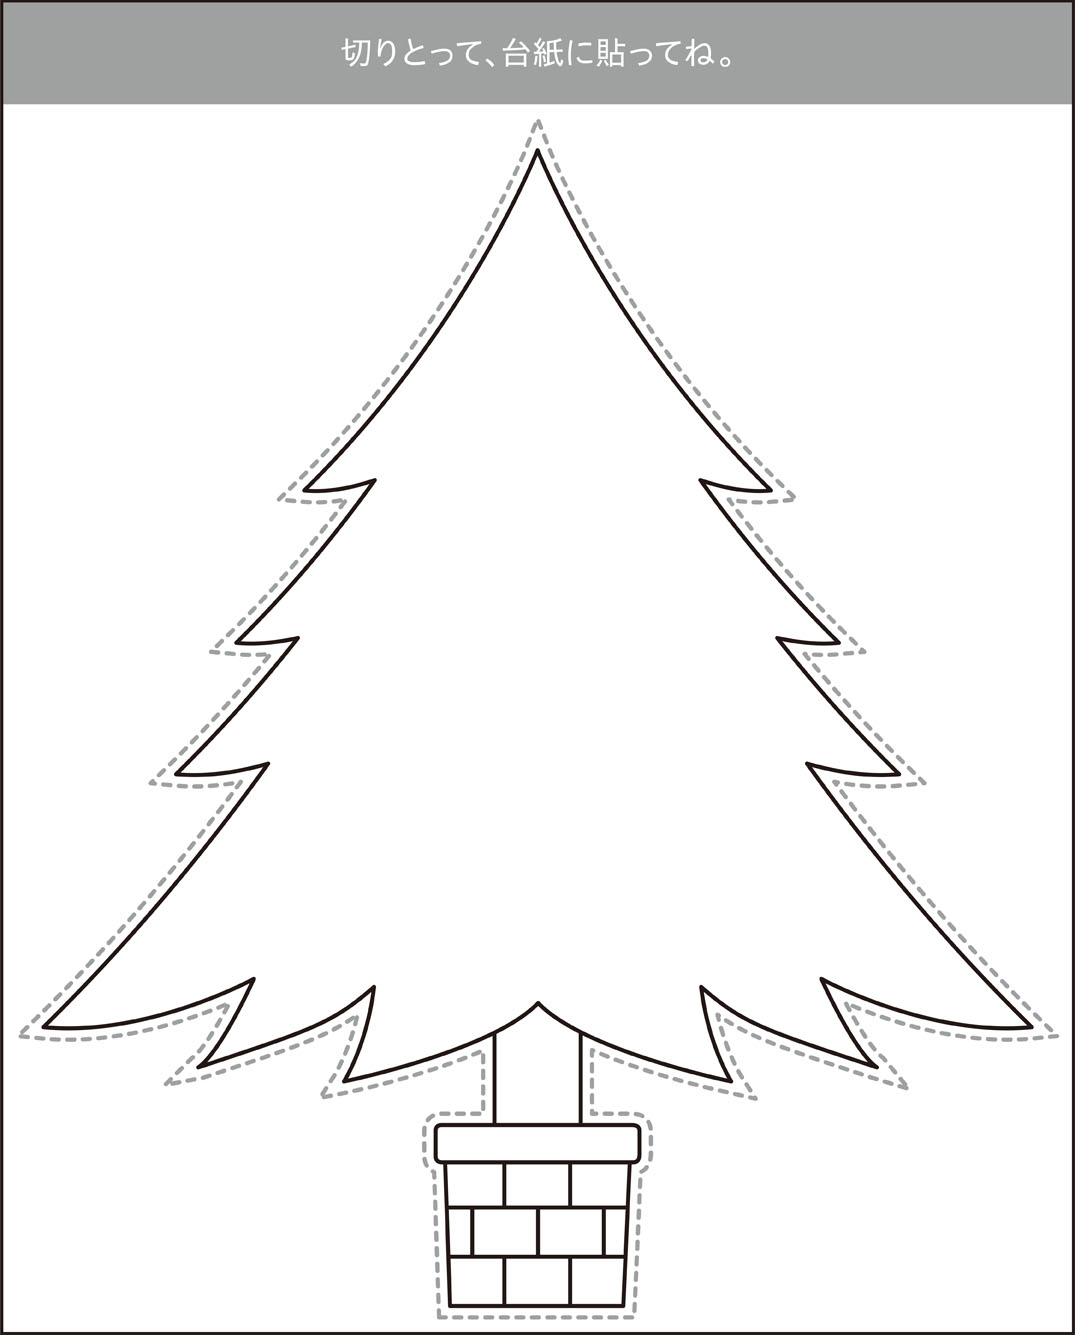 高齢者レク素材 クリスマスツリー 切り絵 介護レク広場 レク素材やレクネタ 企画書 の無料ダウンロード